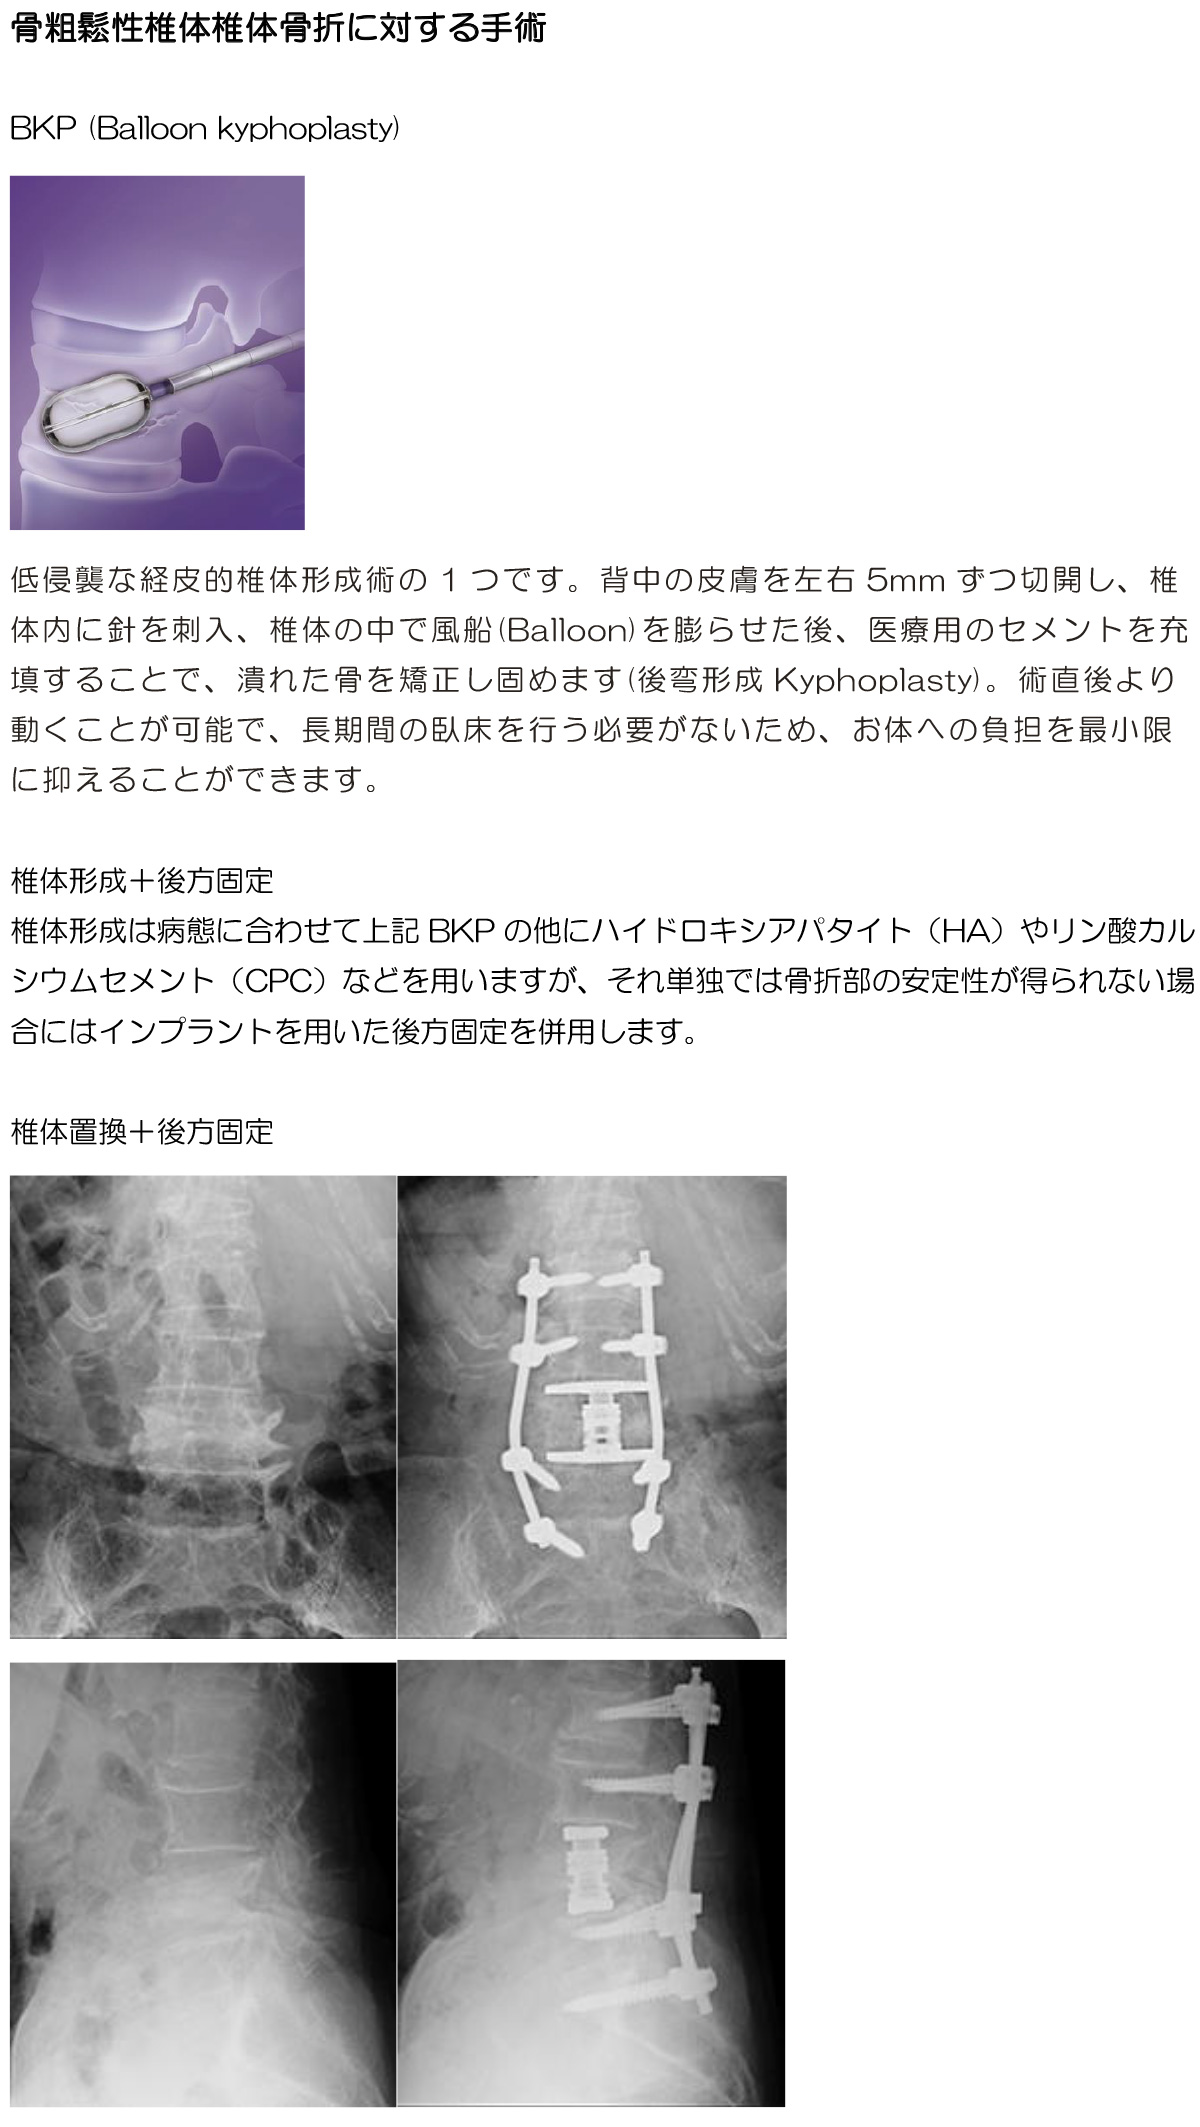 骨粗鬆性椎体椎体骨折に対する手術